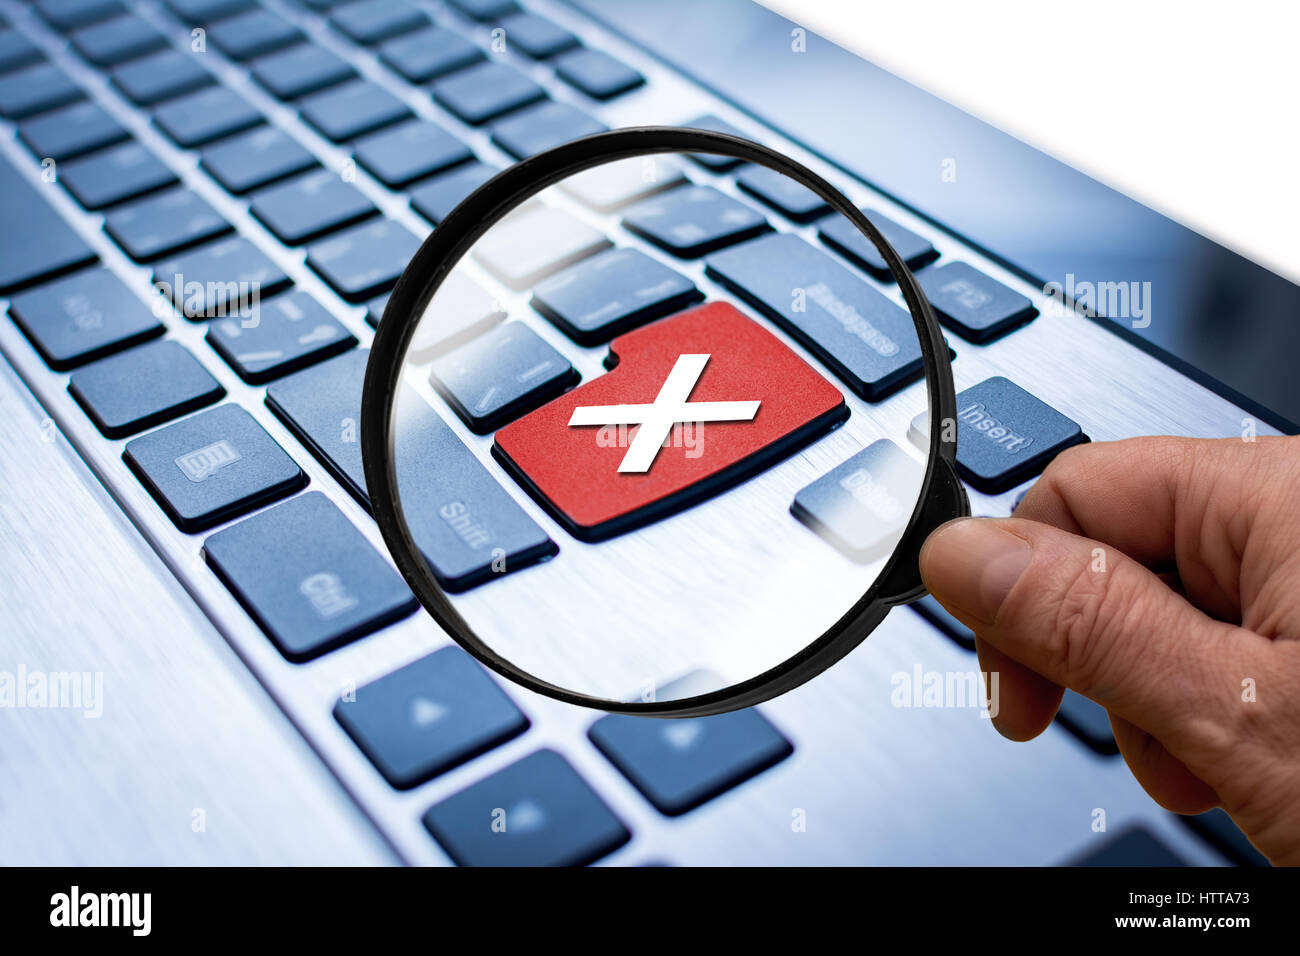 Teclado de ordenador o portátil con tecla roja con cruz Fotografía de stock  - Alamy